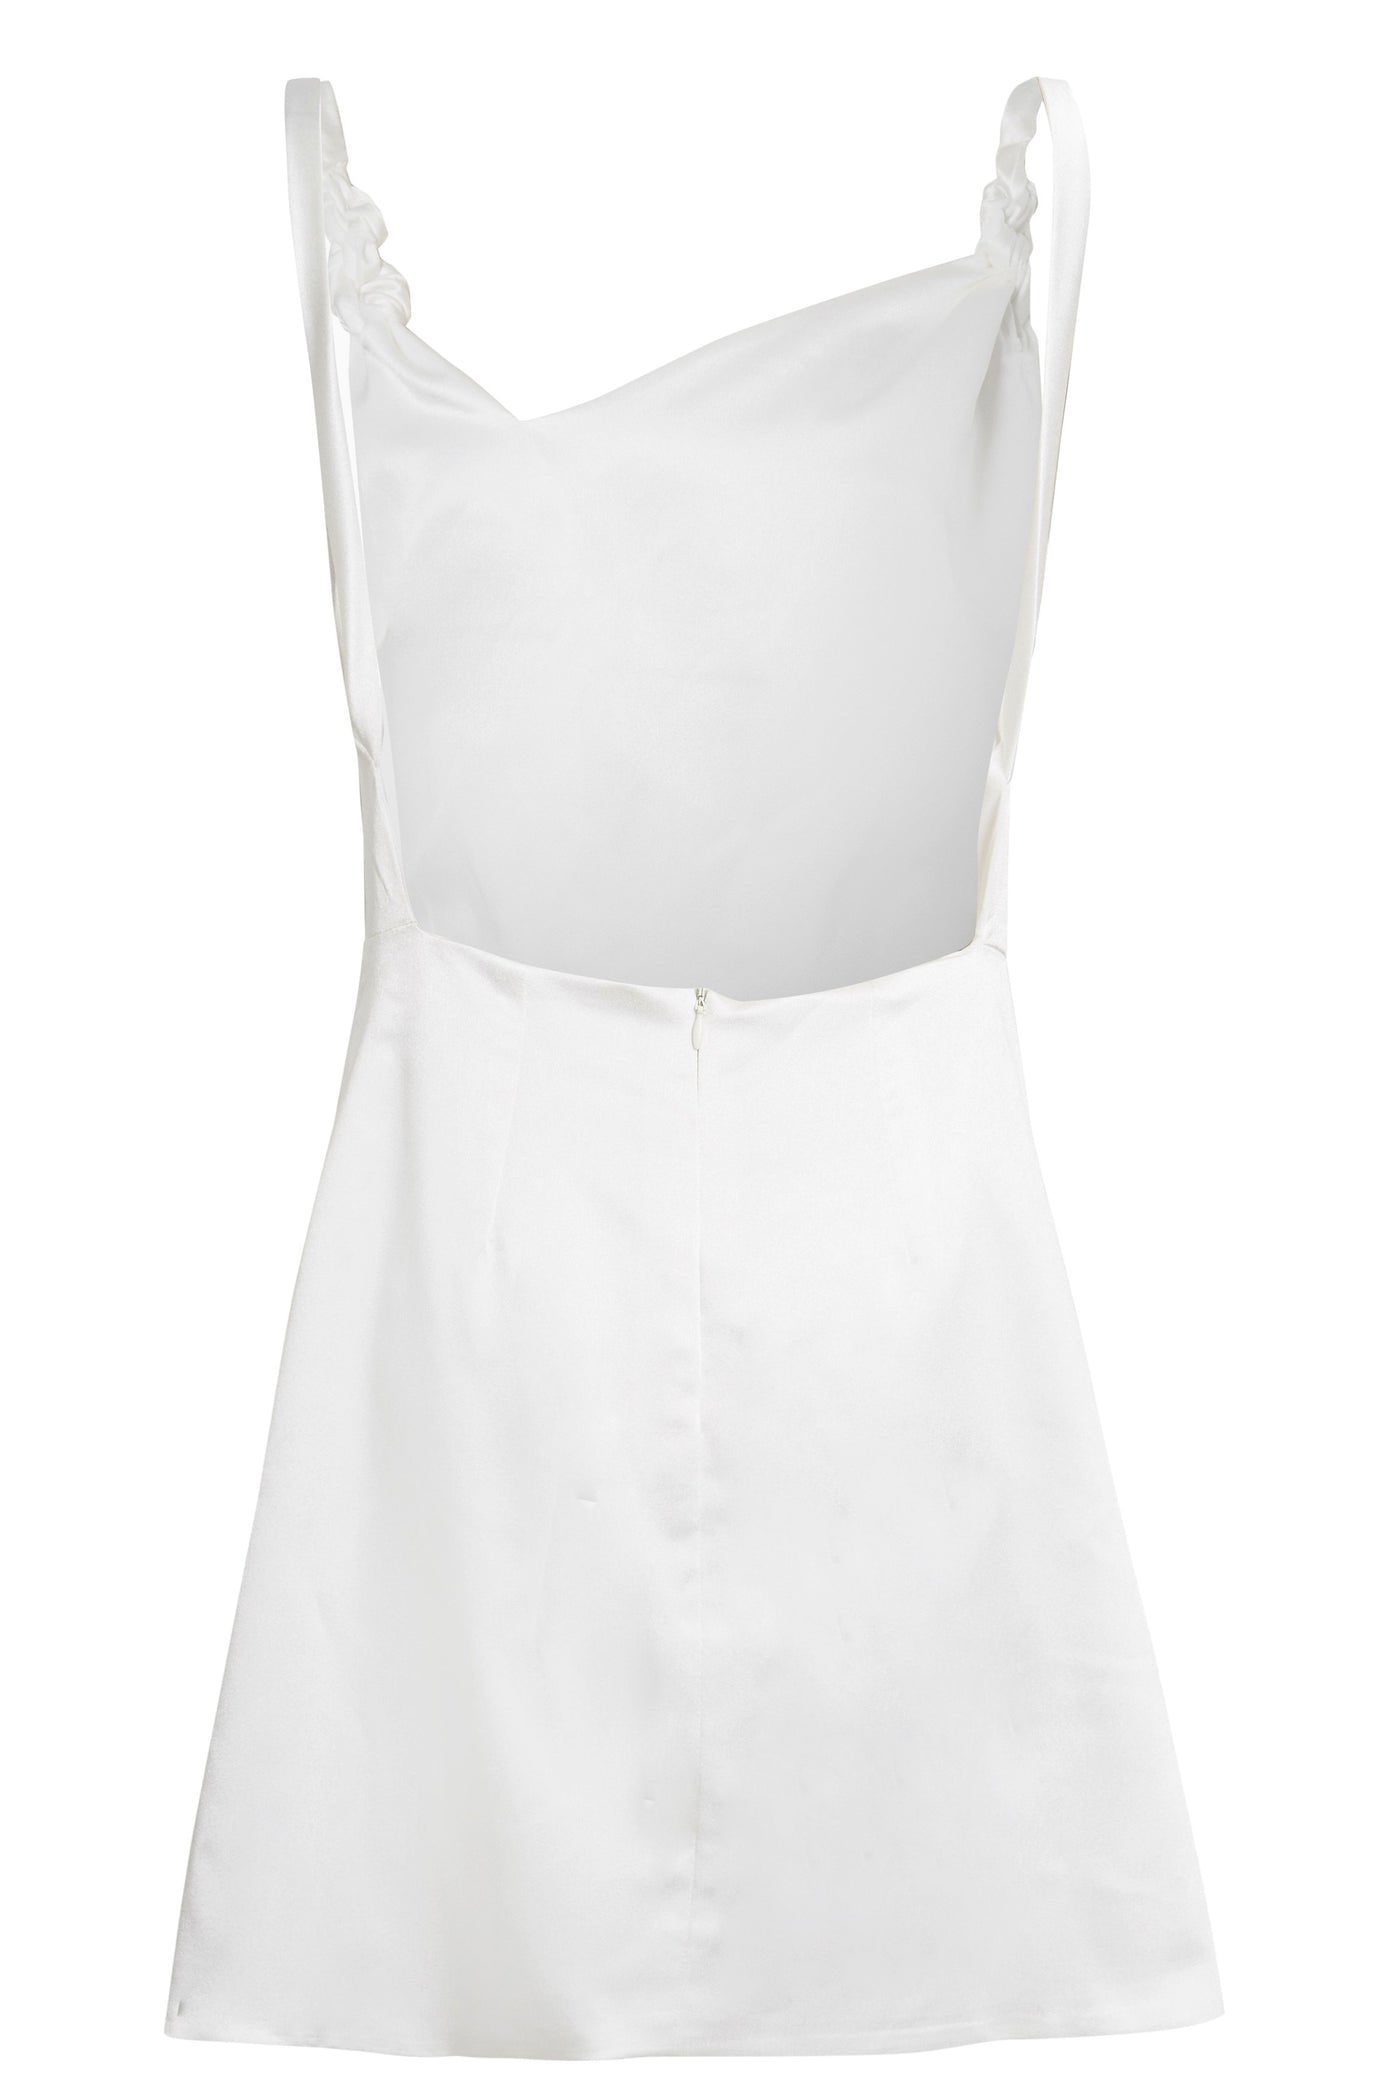 ROSHA - Ivory Twisted Straps Mini Slip Dress With Side Slit